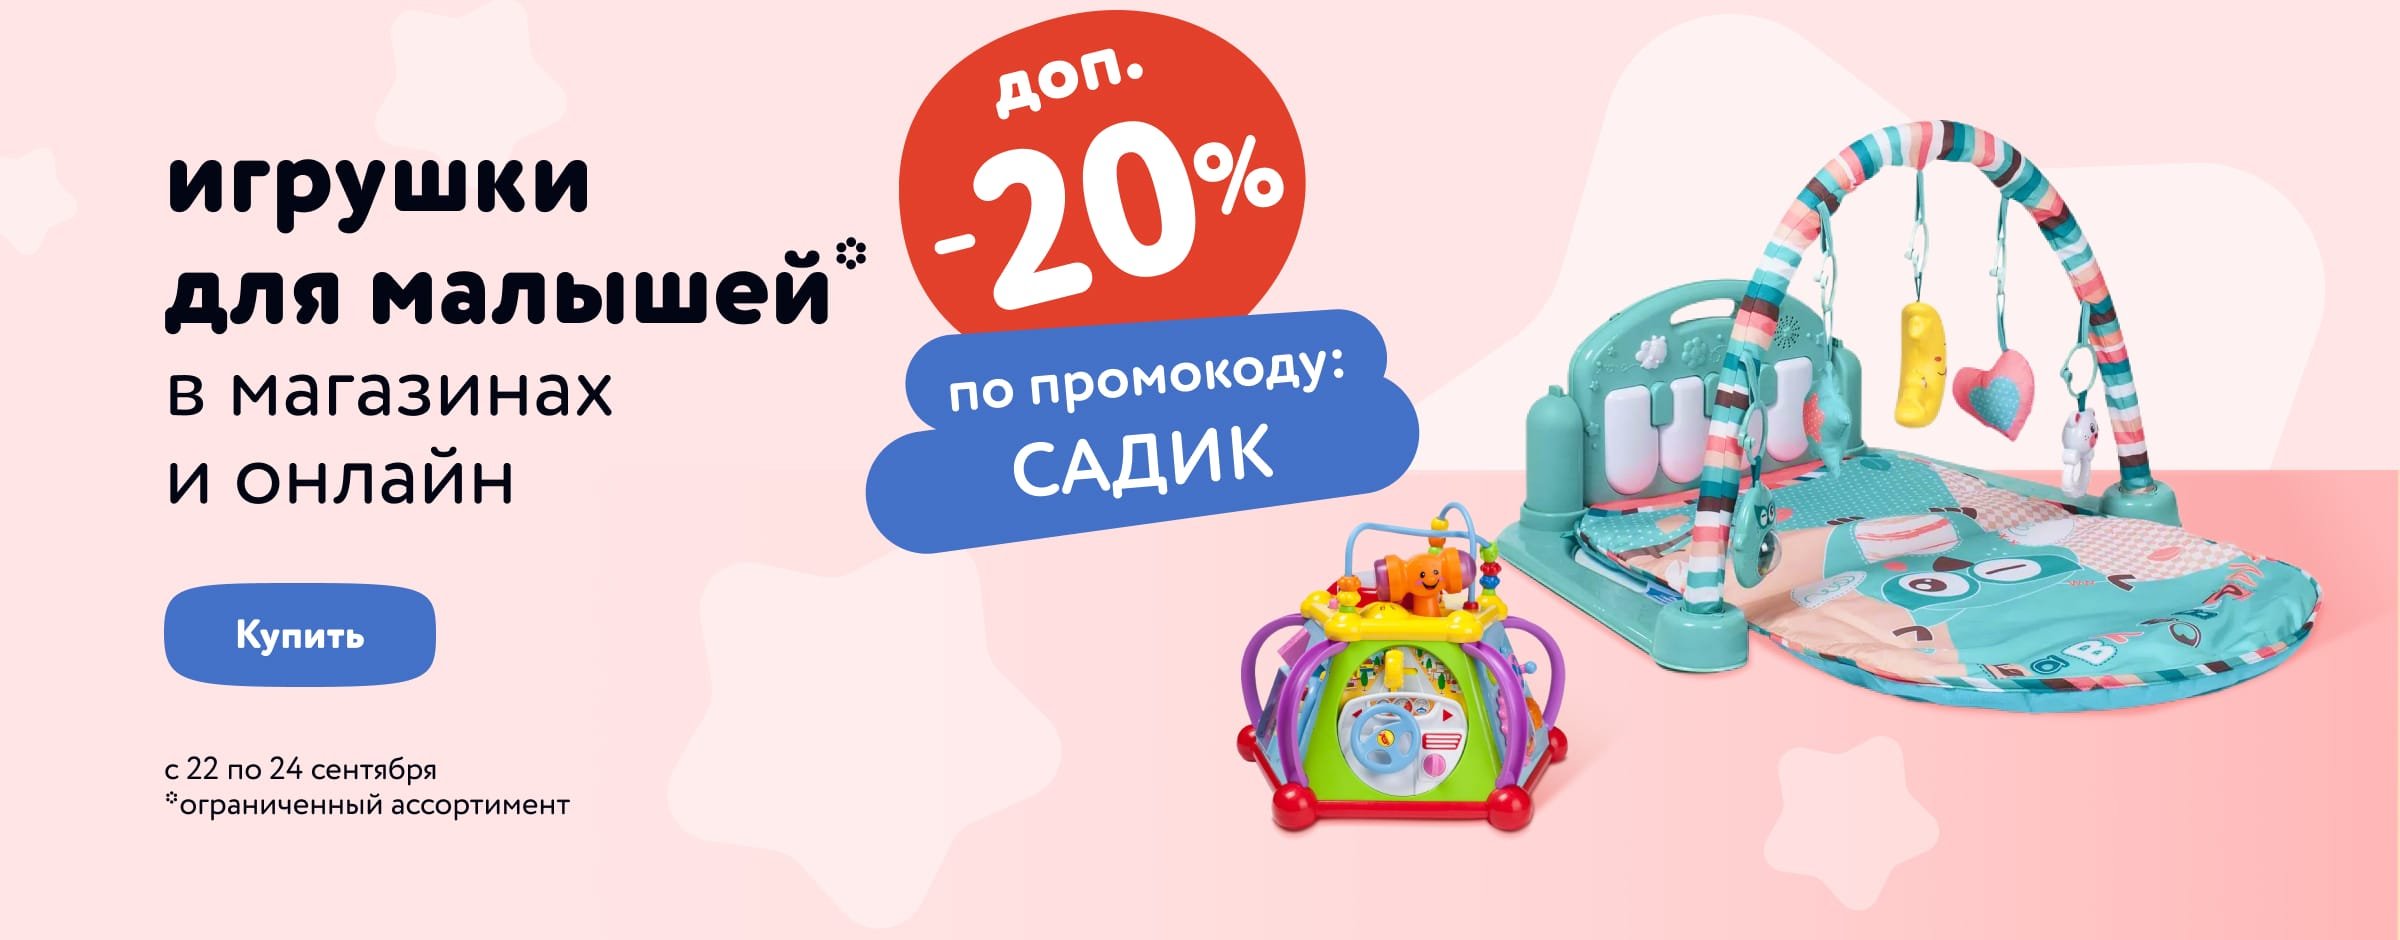 Доп. скидка 20 % по промокоду на игрушки для малышей Baby Go